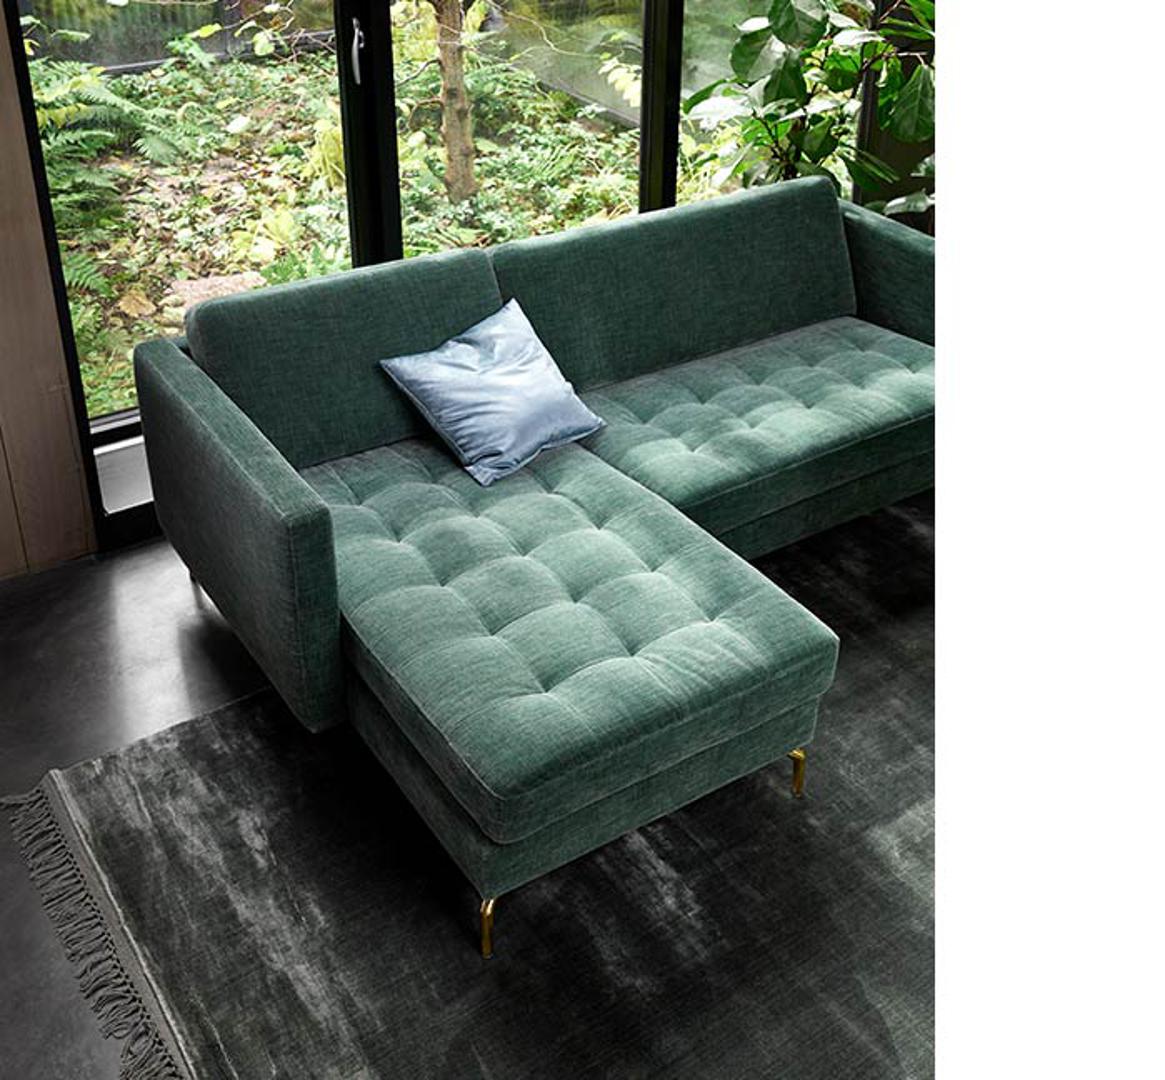 Želite li dnevni boravak koji je trendi, nabavite kauč u zelenoj nijansi...